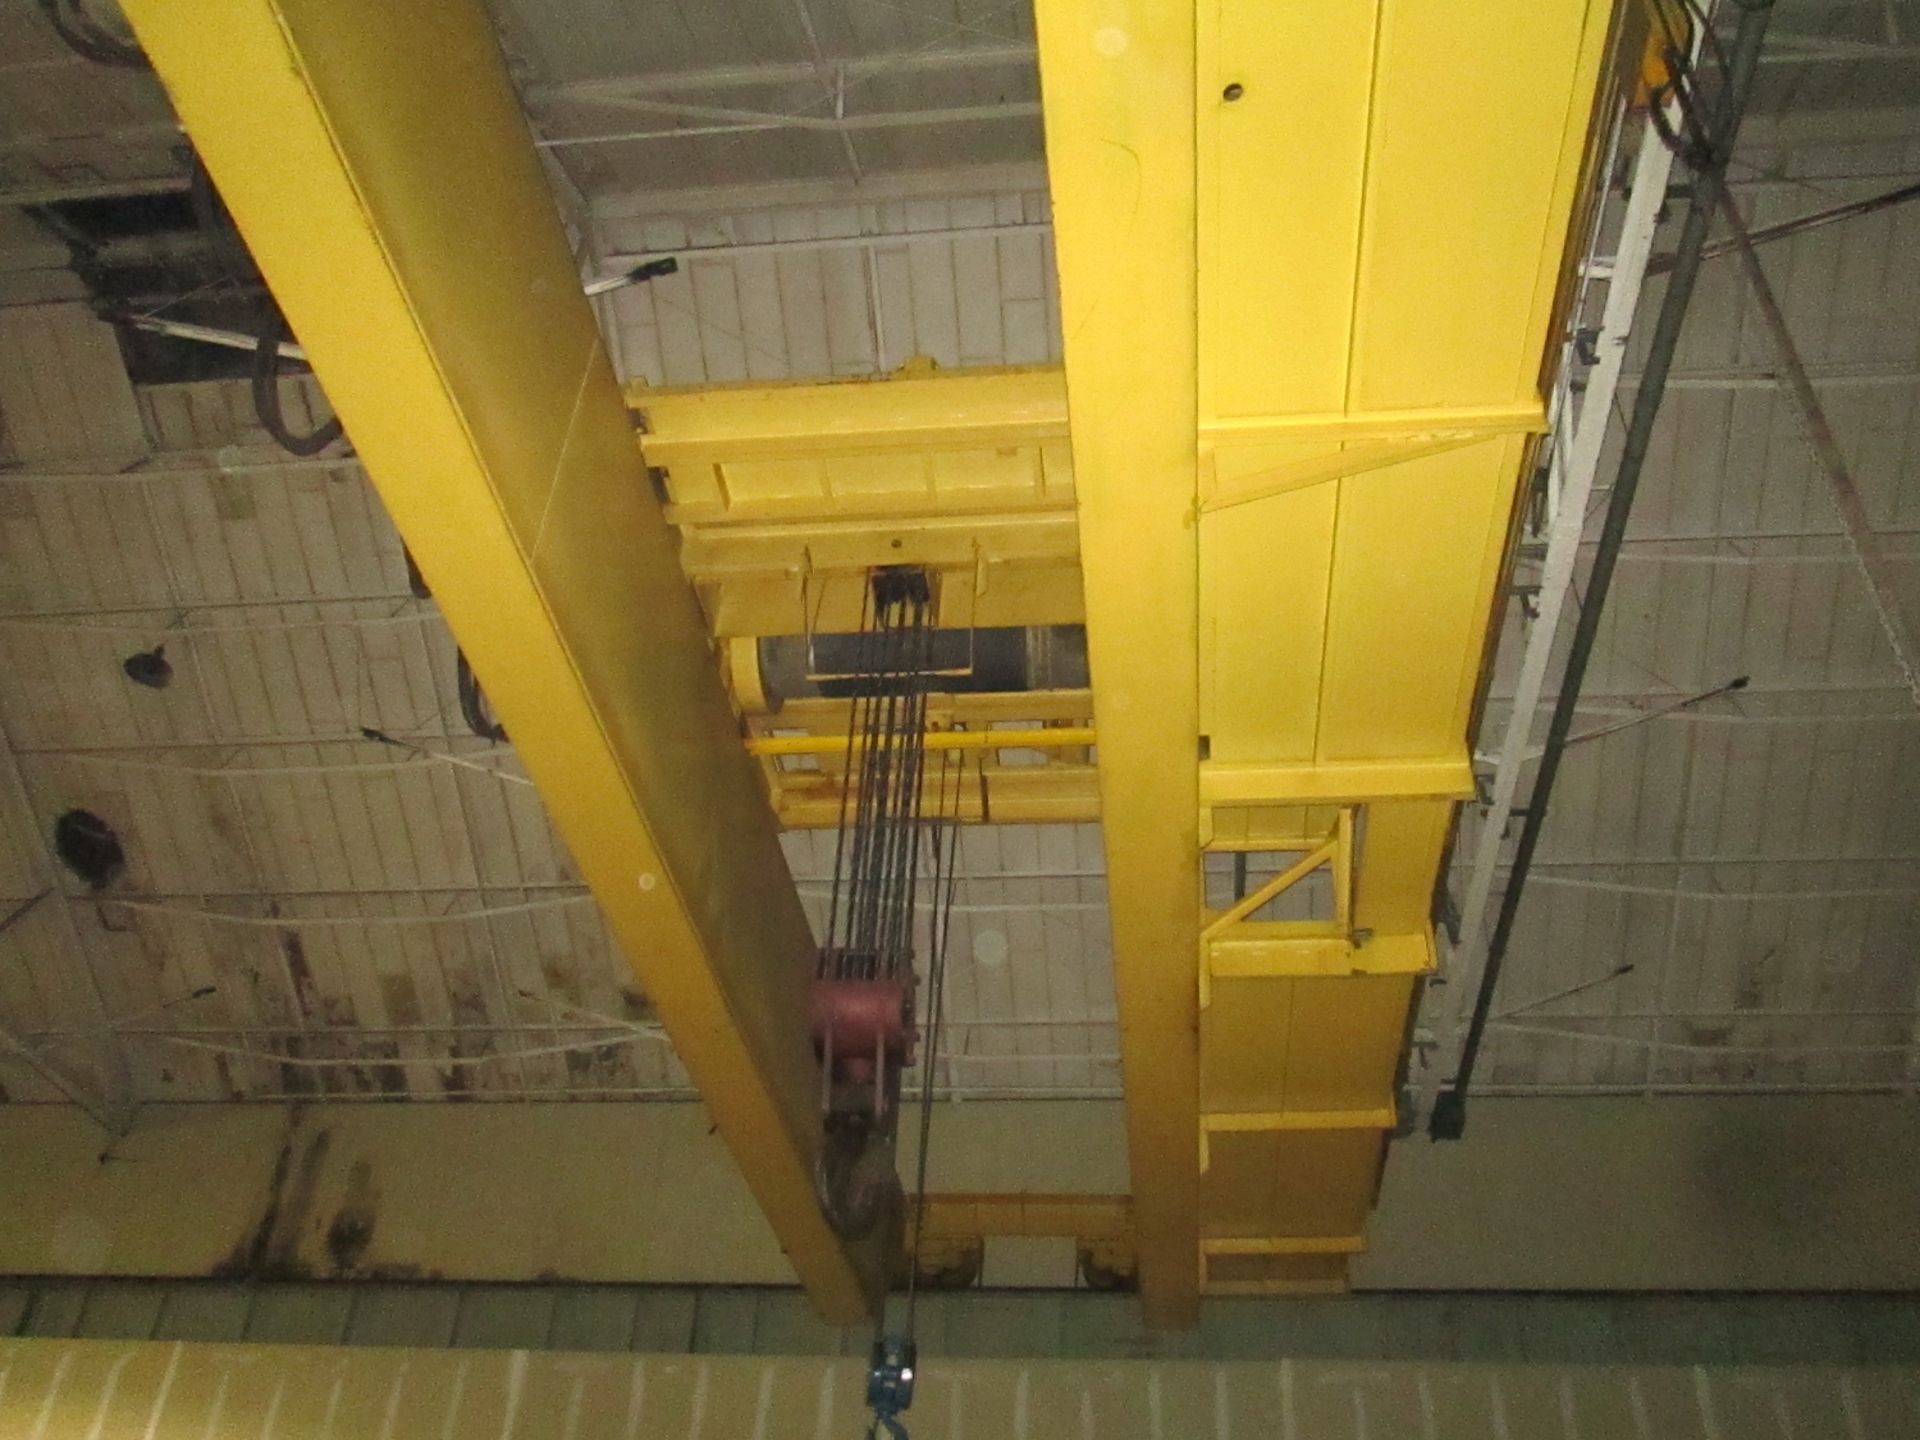 45 Ton Conco Top Riding Double Girder Overhead Bridge Crane, S/N 9164, 45 Ton Bridge, 40 Ton Main - Image 4 of 5